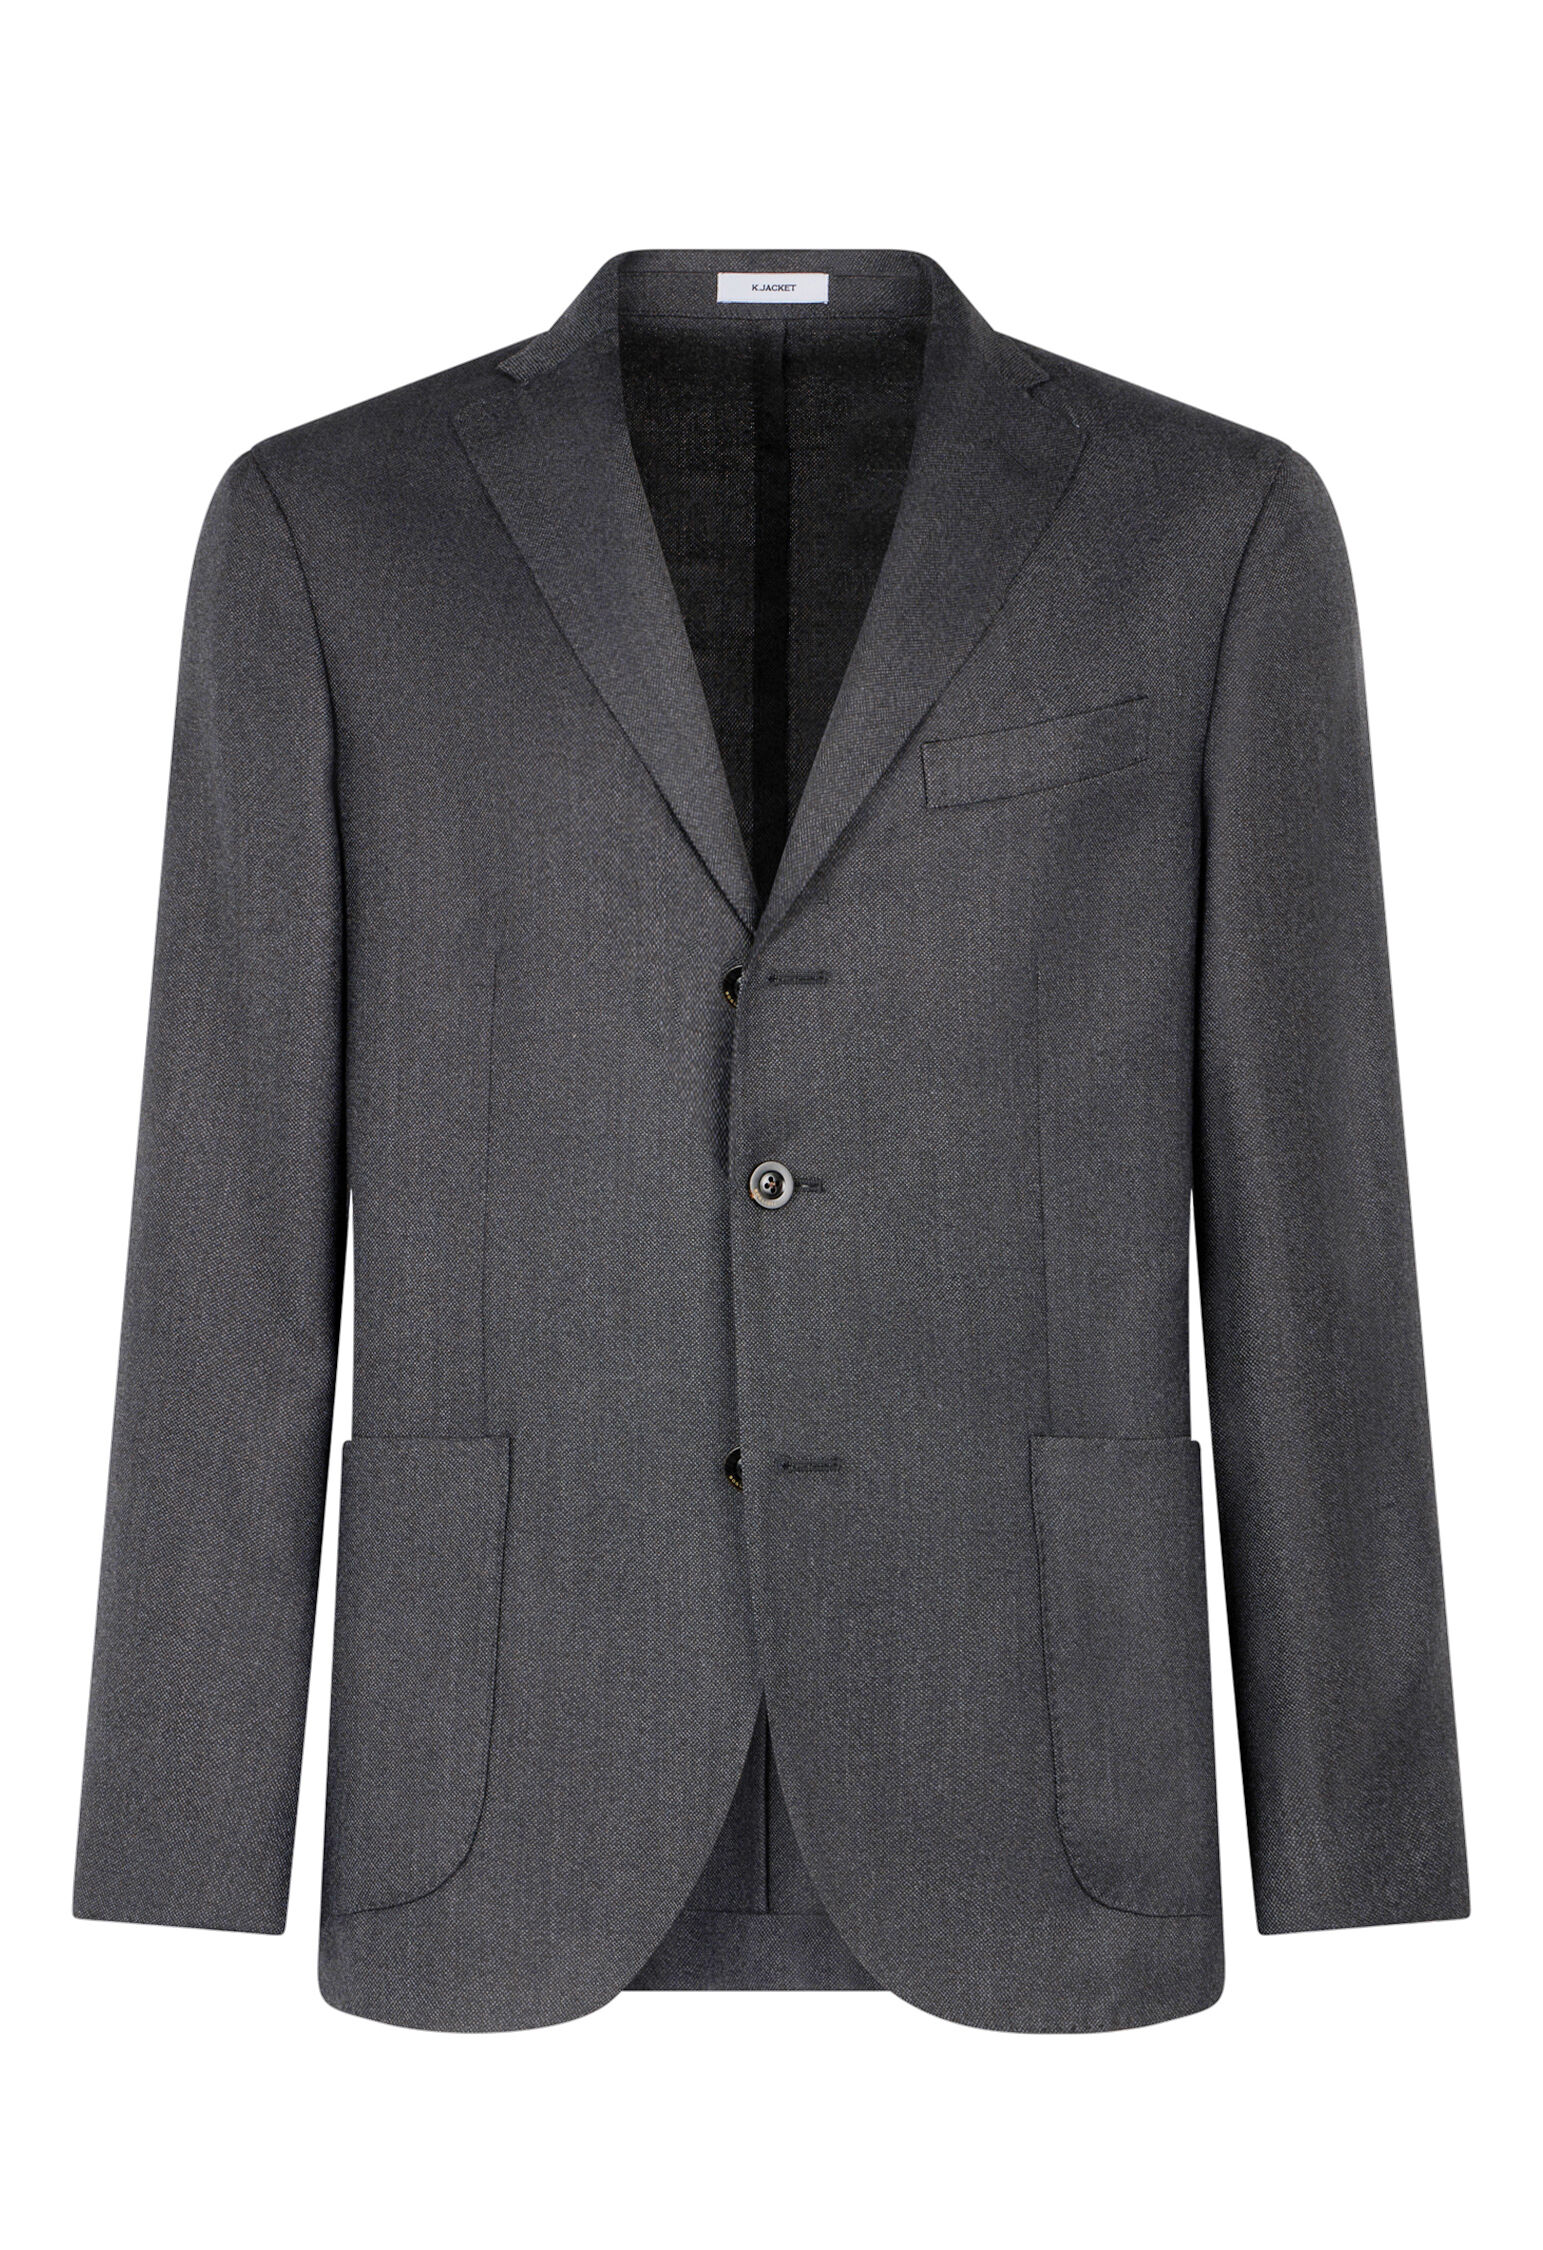 100% virgin wool K-Jacket in Grey: Luxury Italian Jackets | Boglioli®